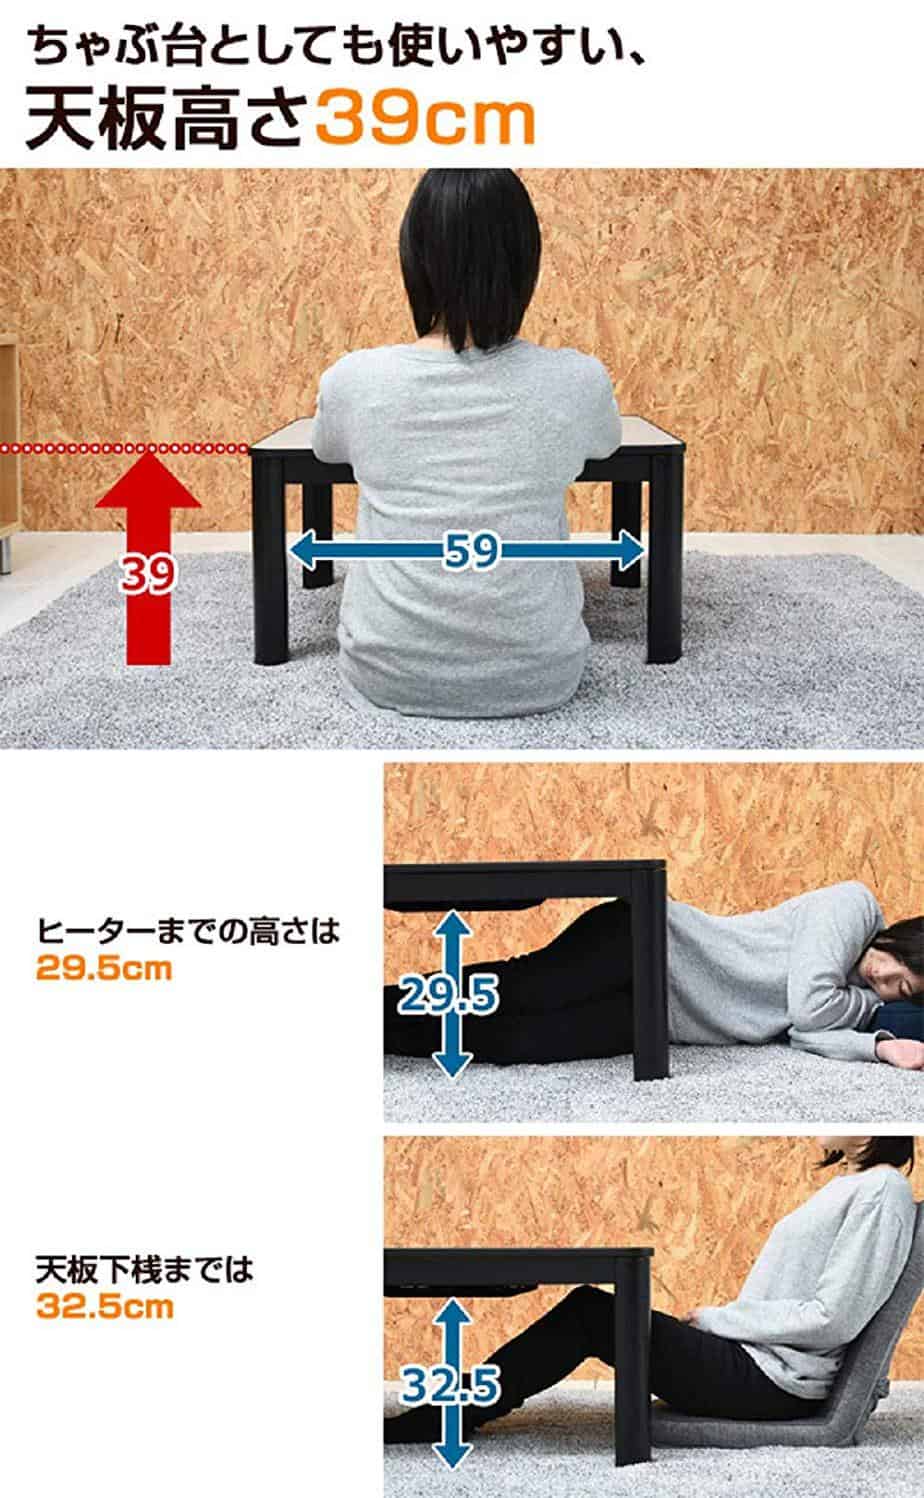 Japanese Kotatsu Heated Table